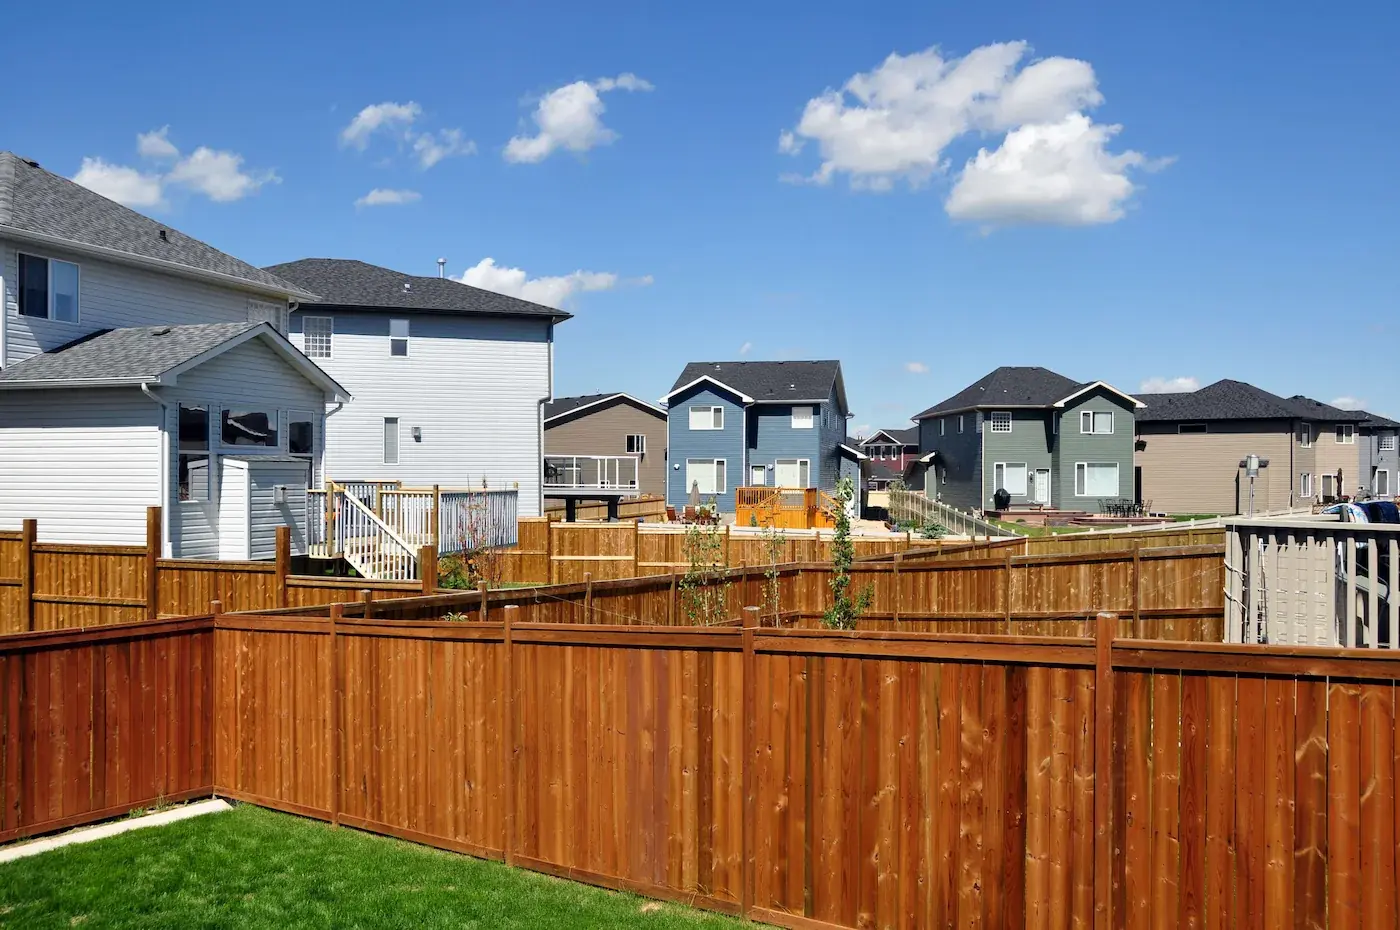 Image of a neighborhood fence group